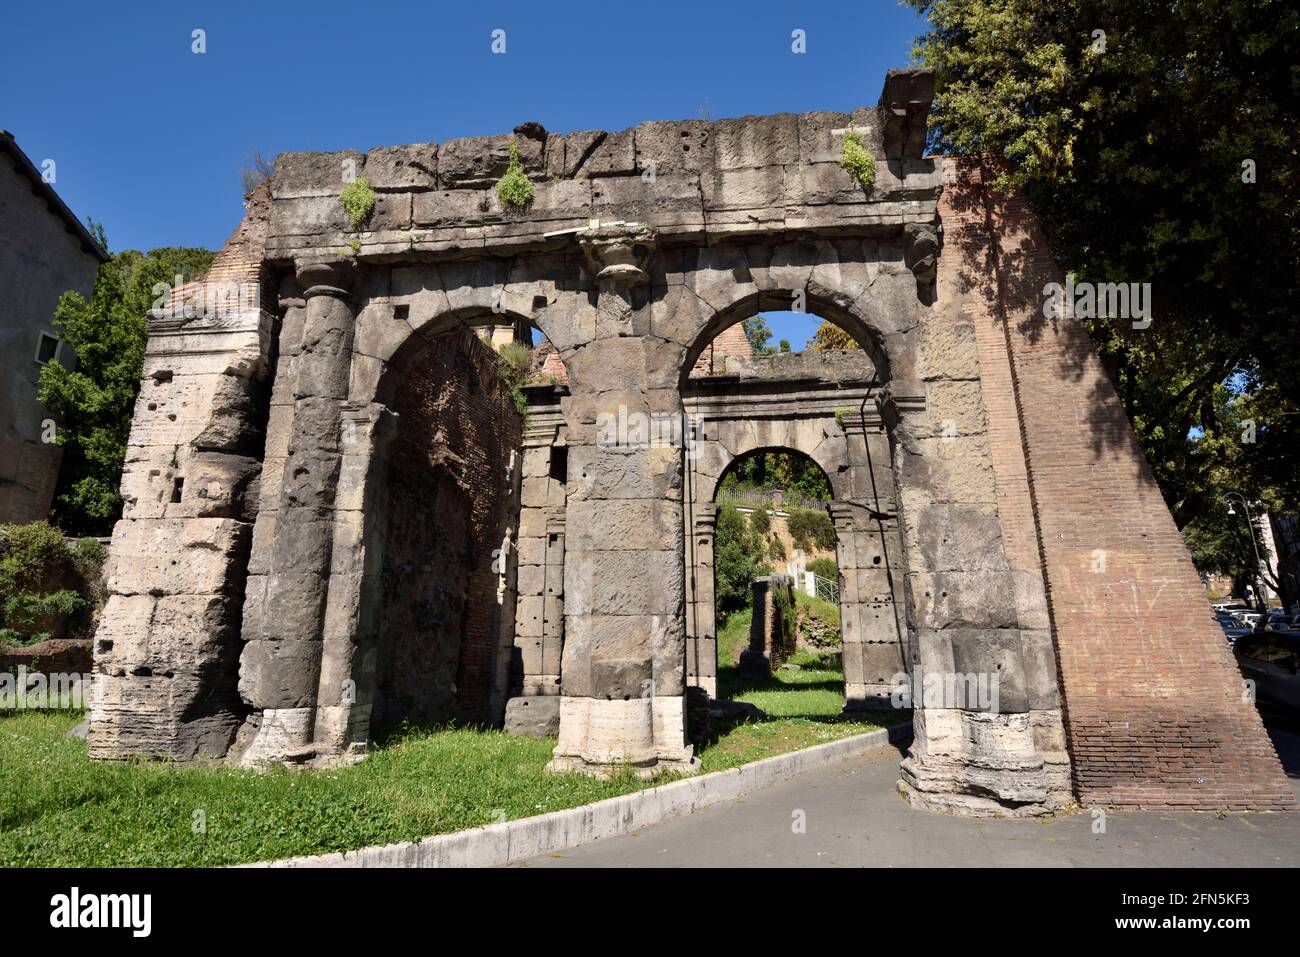 Italie, Rome, Vico Jugario, Porticus Triumphalis, portique républicain romain Banque D'Images